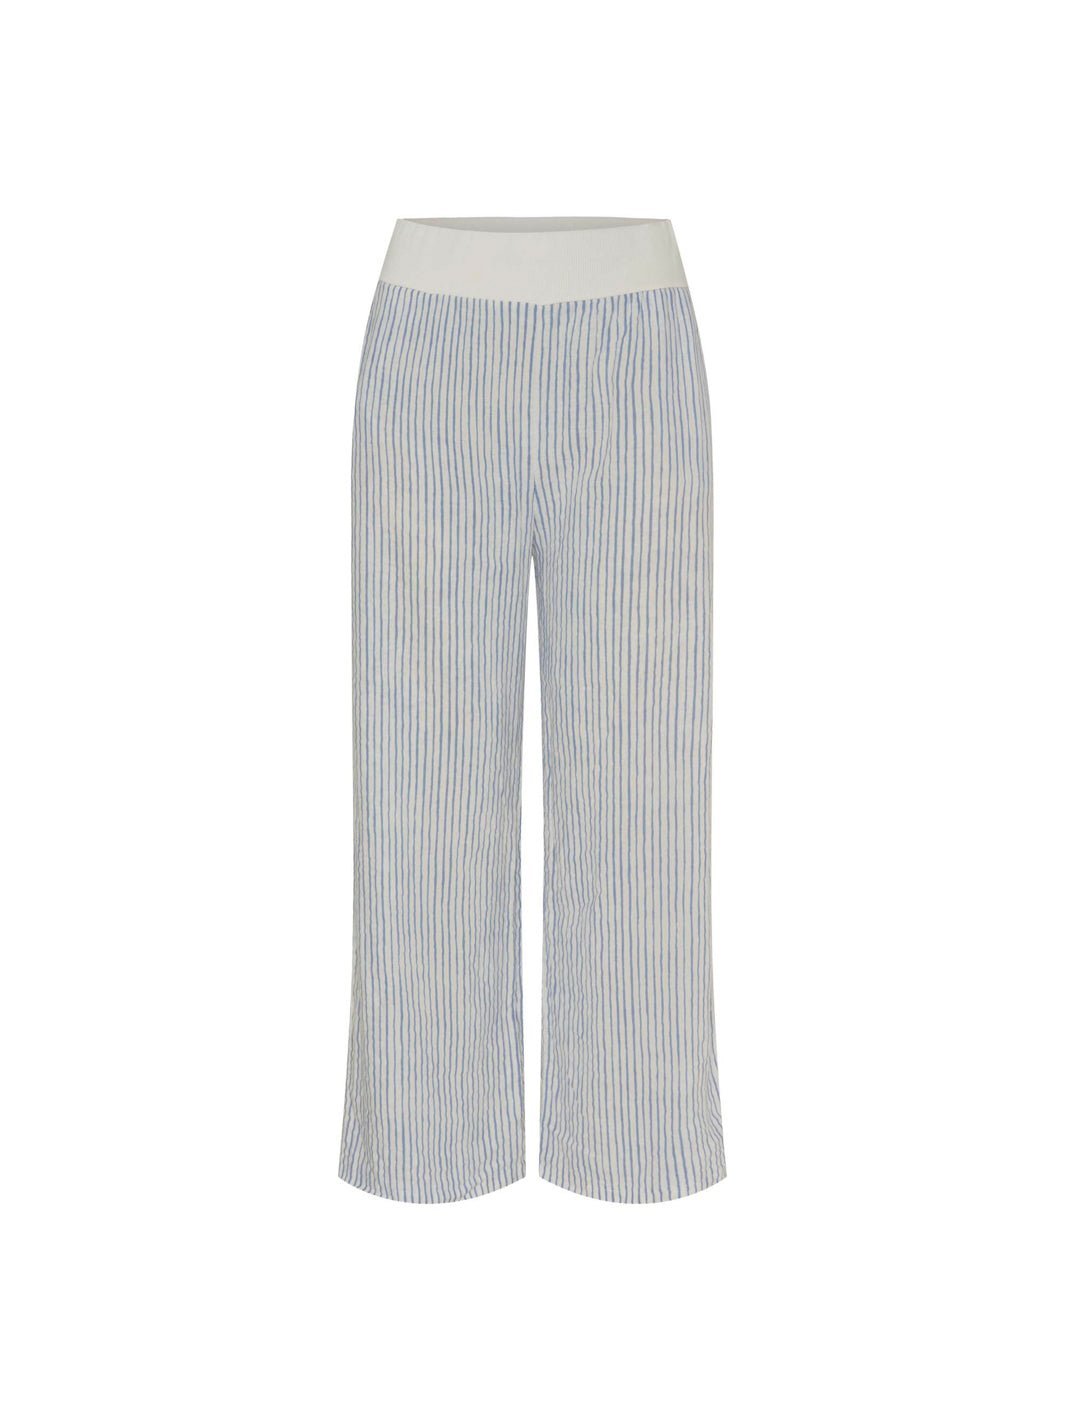 Marta du Chateau Anette pants panna/jeans stripe - Online-Mode